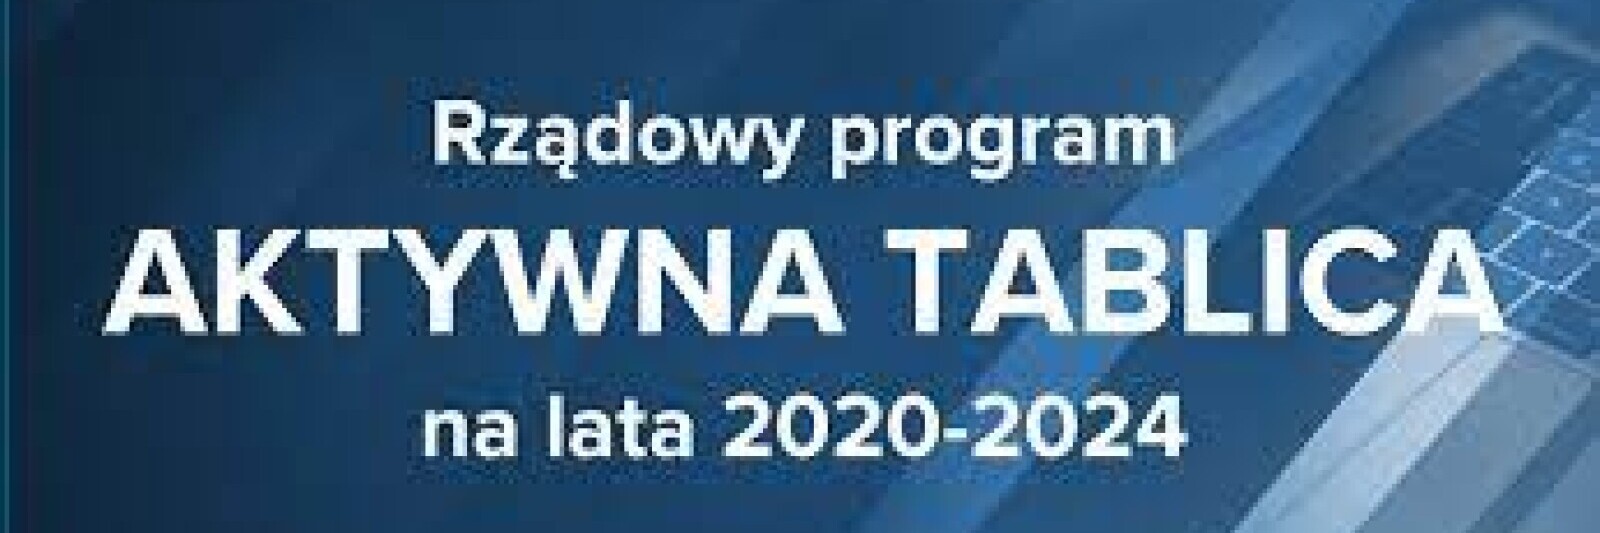 Rządowy Program Aktywna Tablica 2020-2024